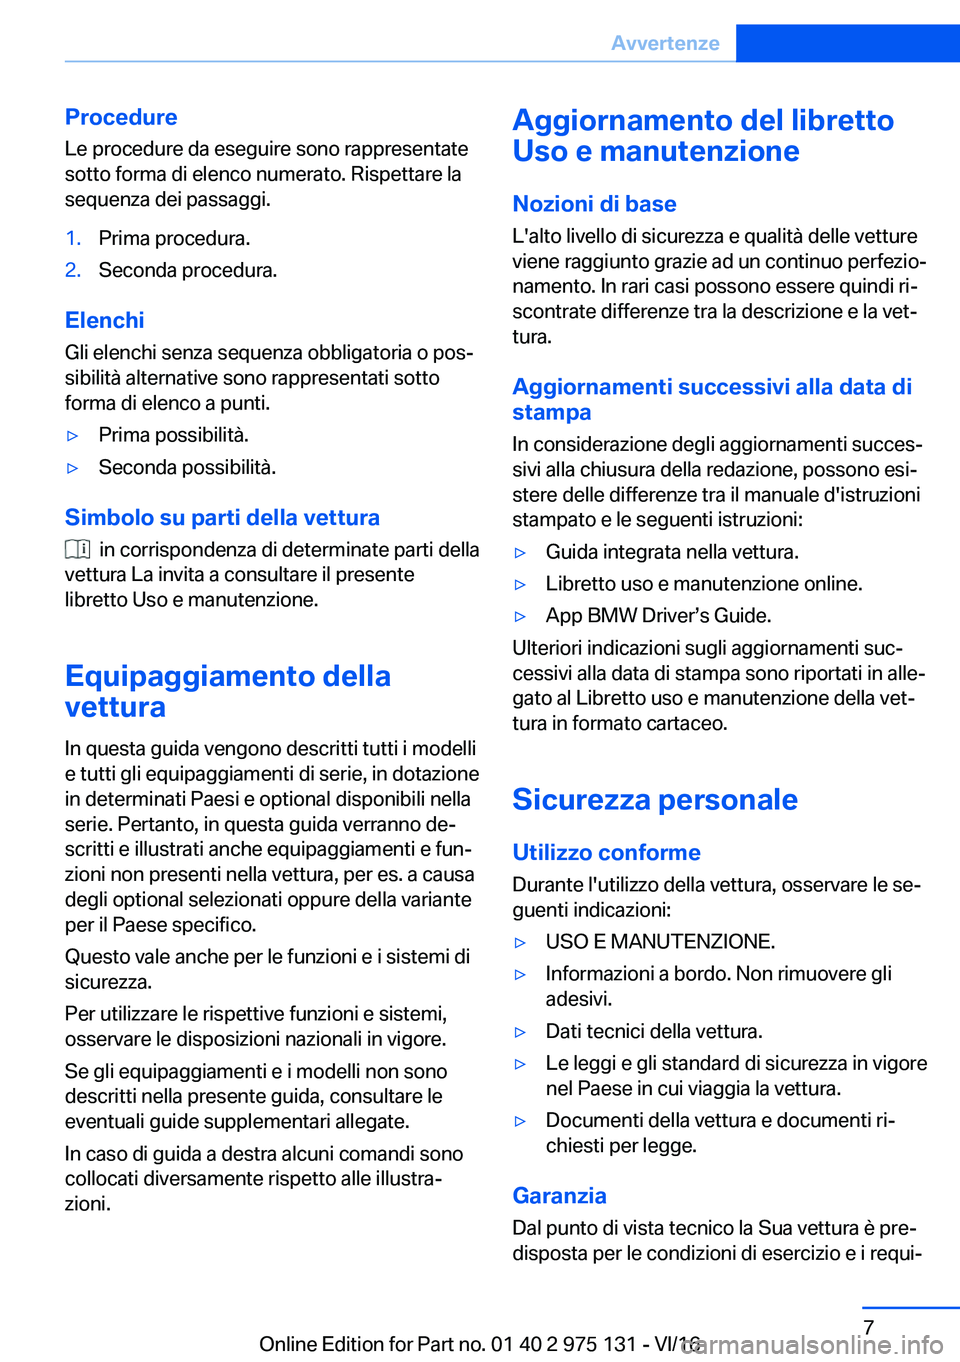 BMW M3 2017  Libretti Di Uso E manutenzione (in Italian) �P�r�o�c�e�d�u�r�e�L�e� �p�r�o�c�e�d�u�r�e� �d�a� �e�s�e�g�u�i�r�e� �s�o�n�o� �r�a�p�p�r�e�s�e�n�t�a�t�e�s�o�t�t�o� �f�o�r�m�a� �d�i� �e�l�e�n�c�o� �n�u�m�e�r�a�t�o�.� �R�i�s�p�e�t�t�a�r�e� �l�a�s�e�q